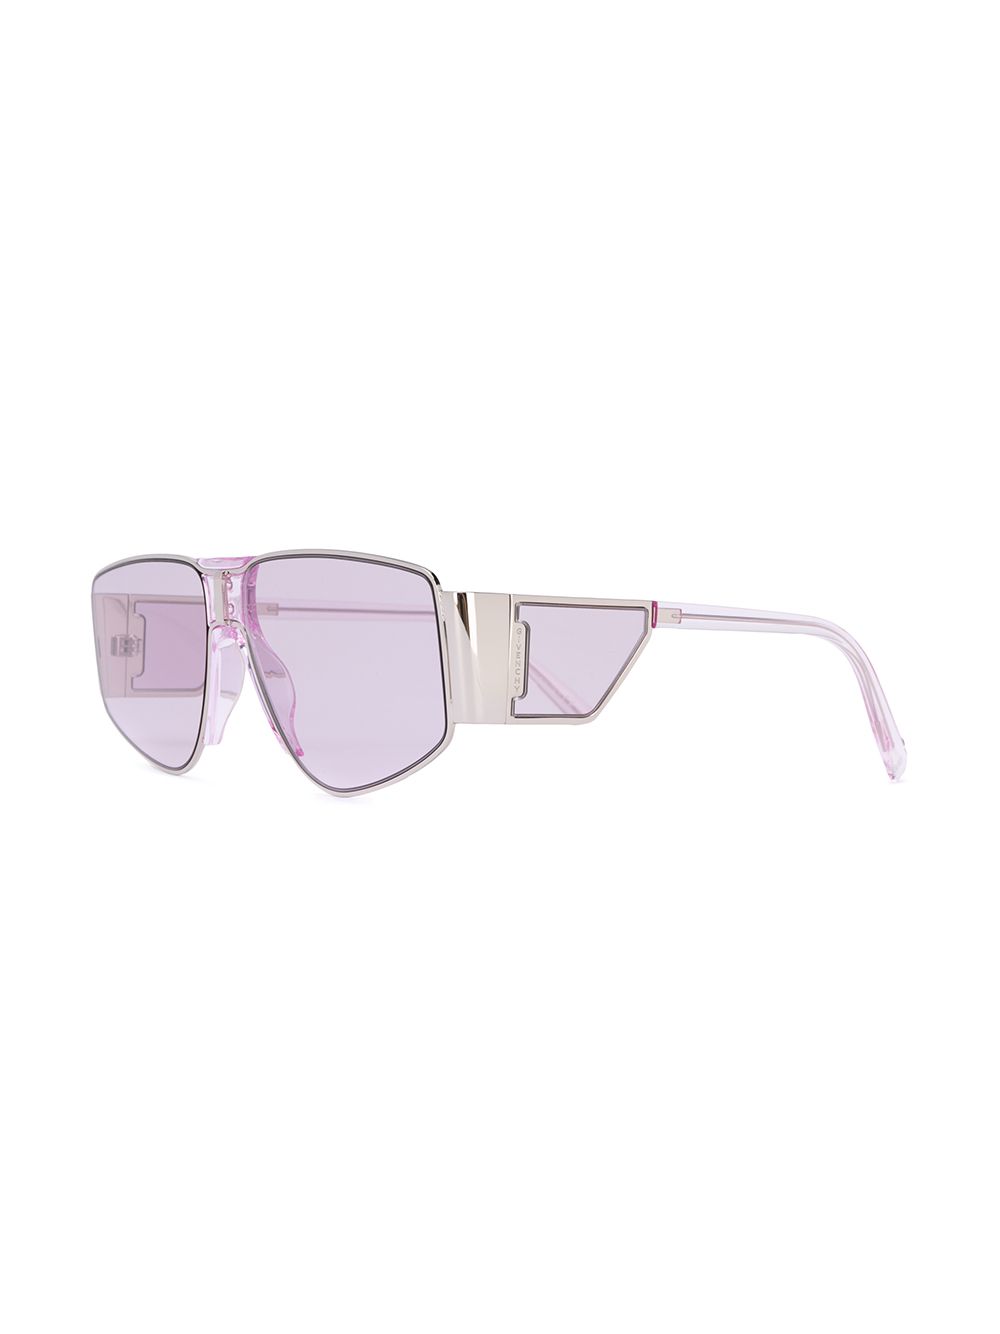 фото Givenchy eyewear солнцезащитные очки с боковыми заслонками